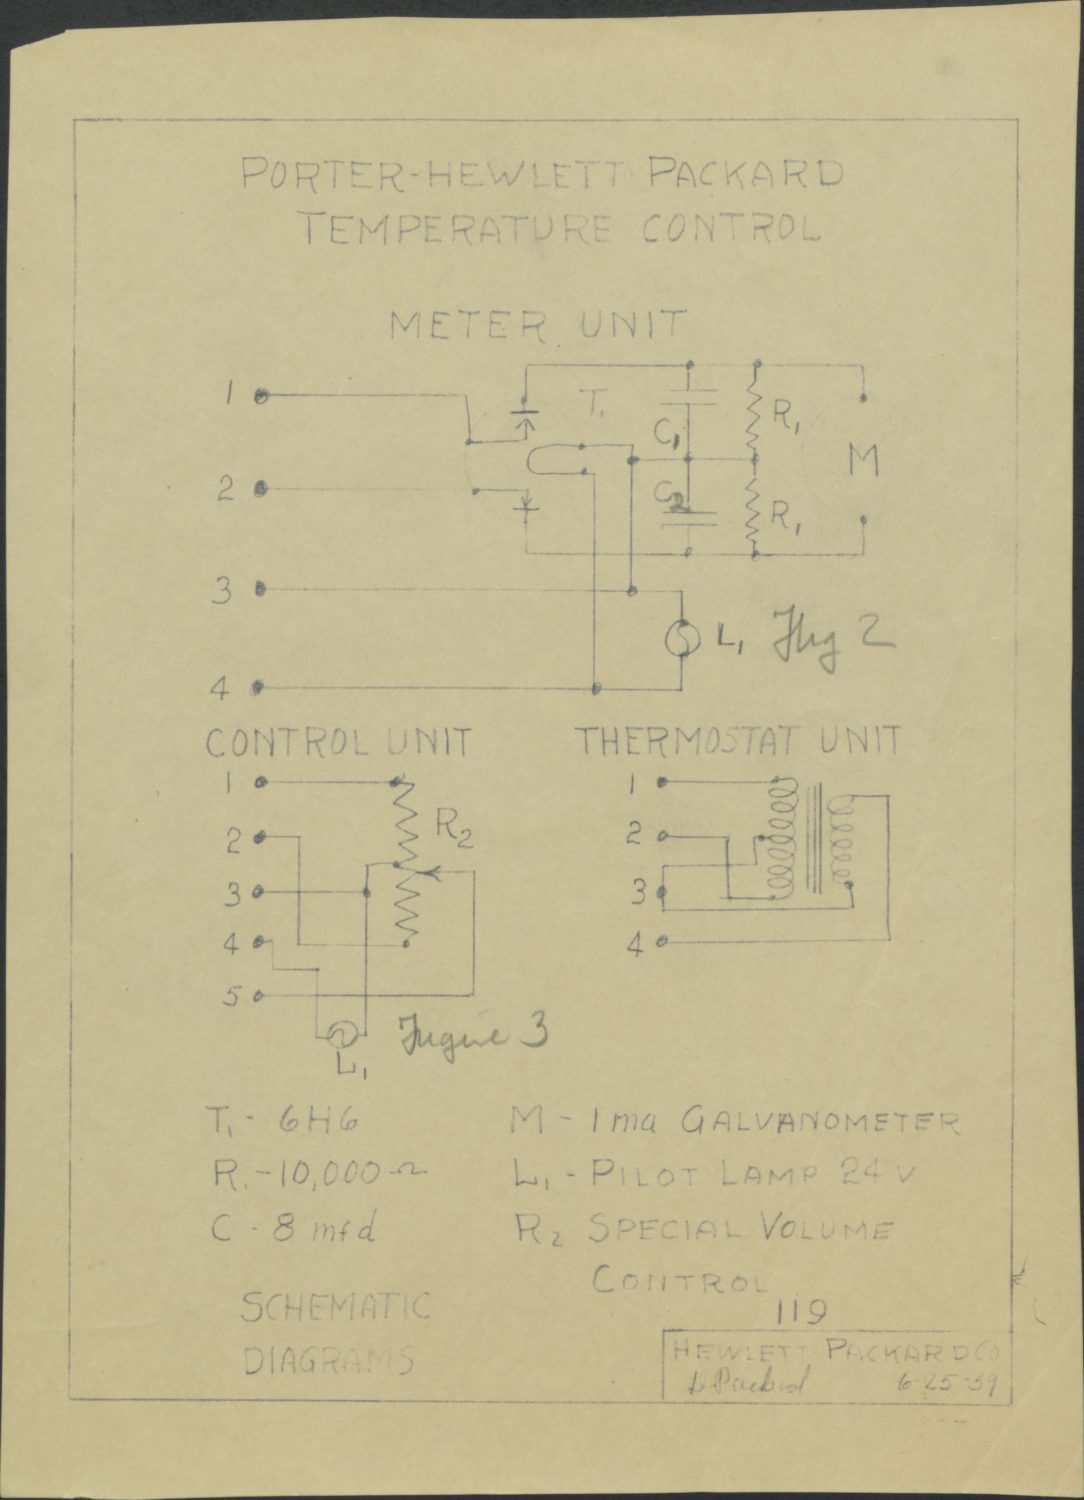 Schematic for Porter-Hewlett Packard Temperature Control.